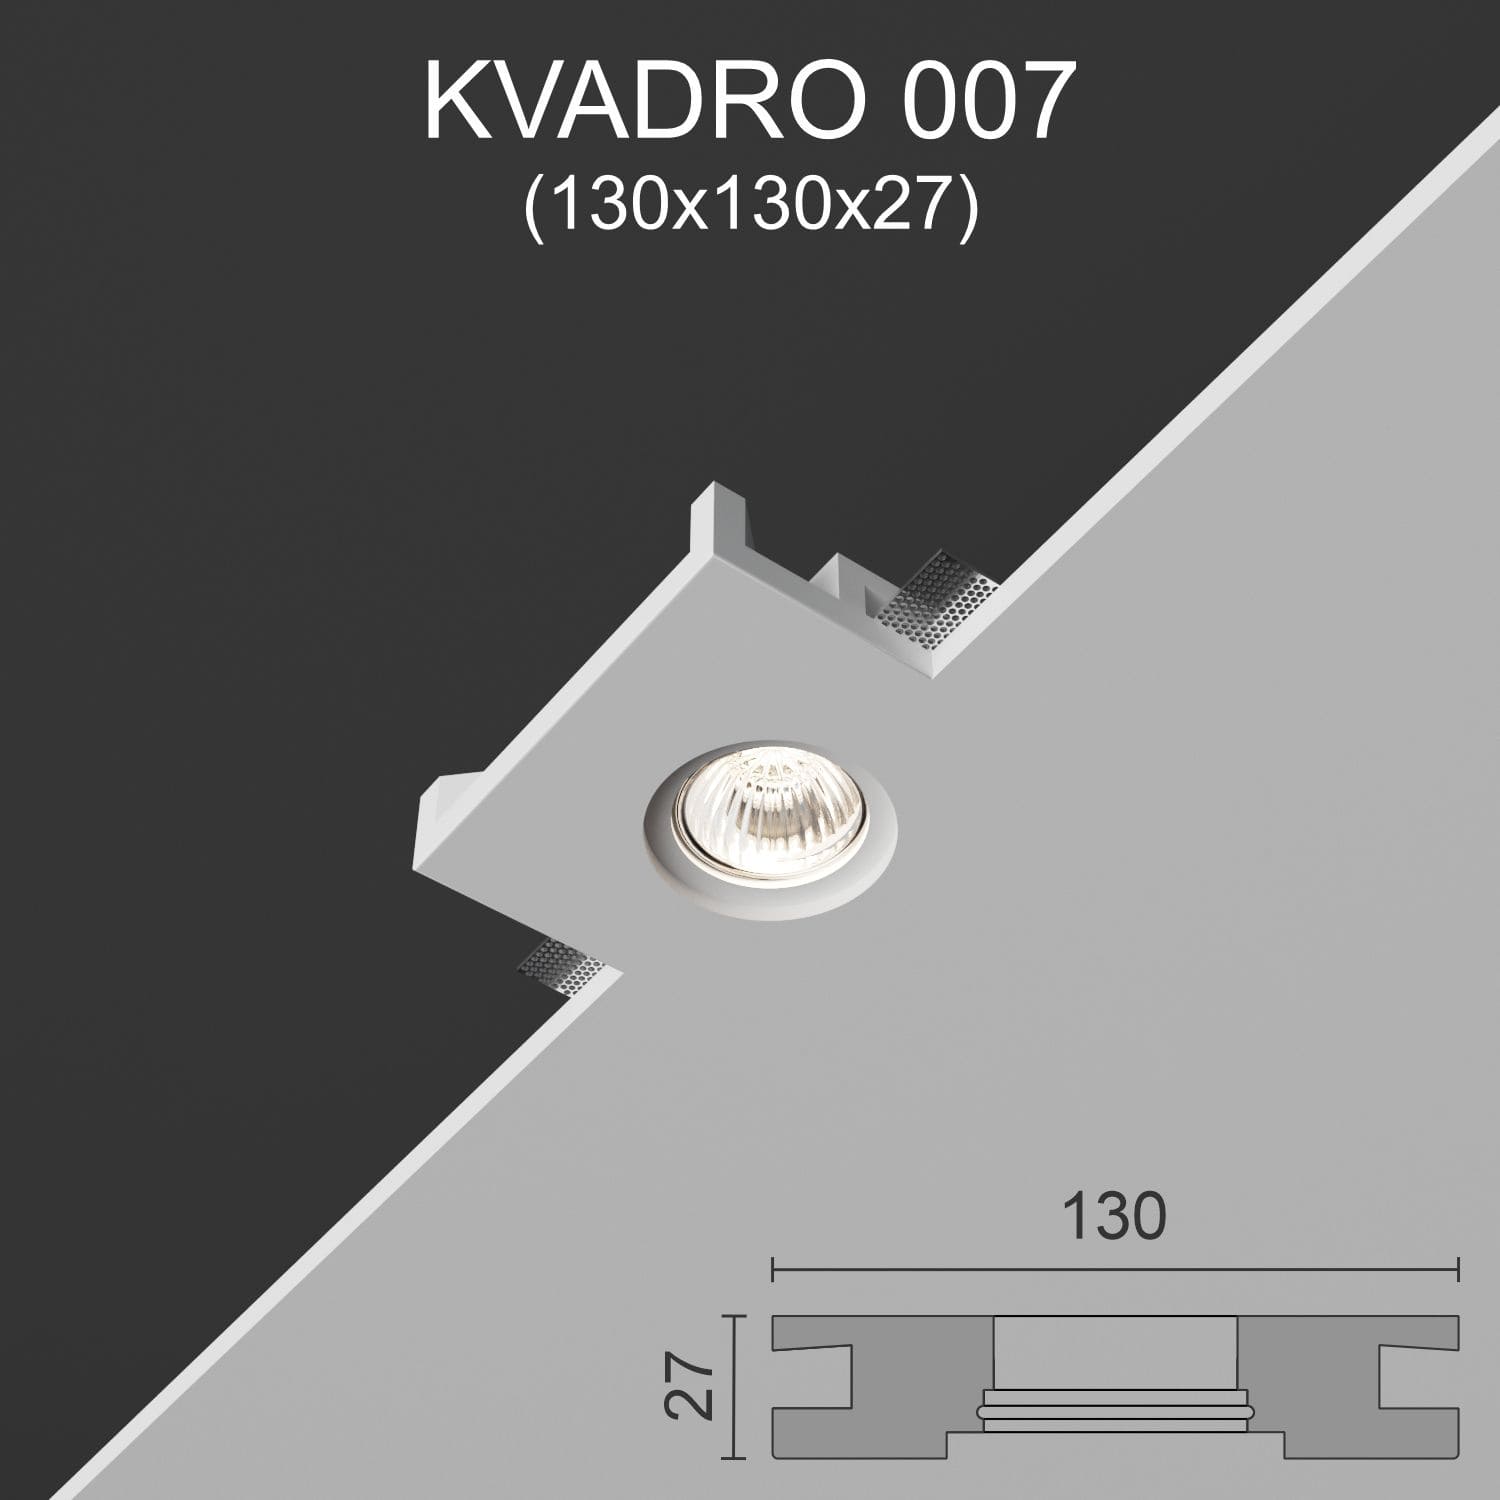 Светильник встраиваемый точечный гипсовый KVADRO 007